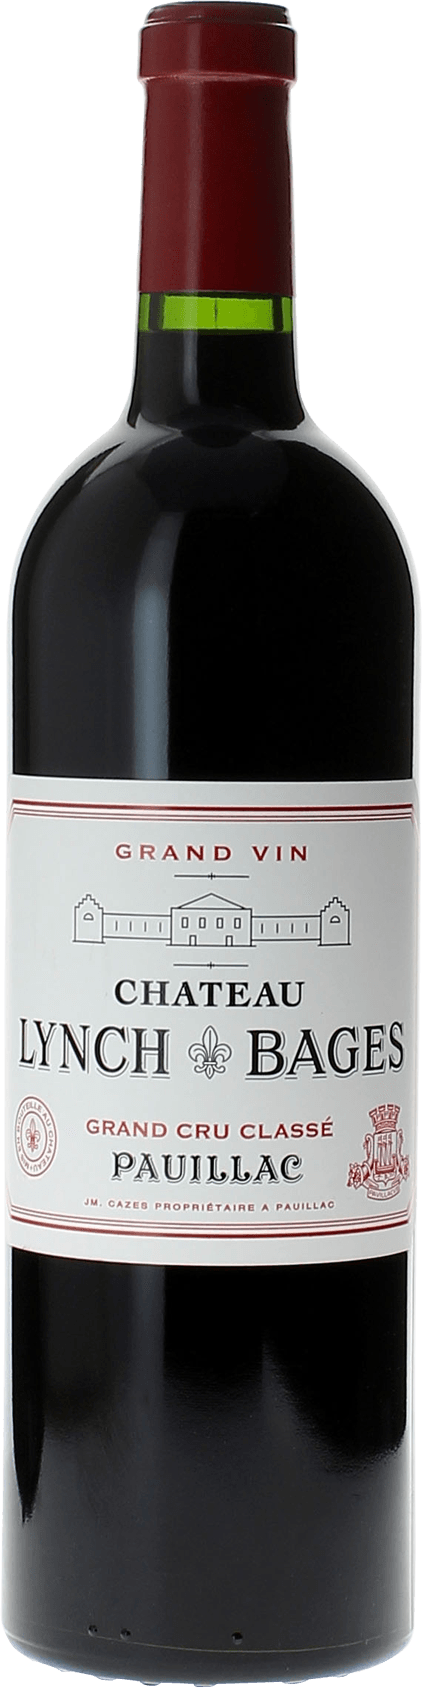 Lynch bages 2001 5 me Grand cru class Pauillac, Bordeaux rouge